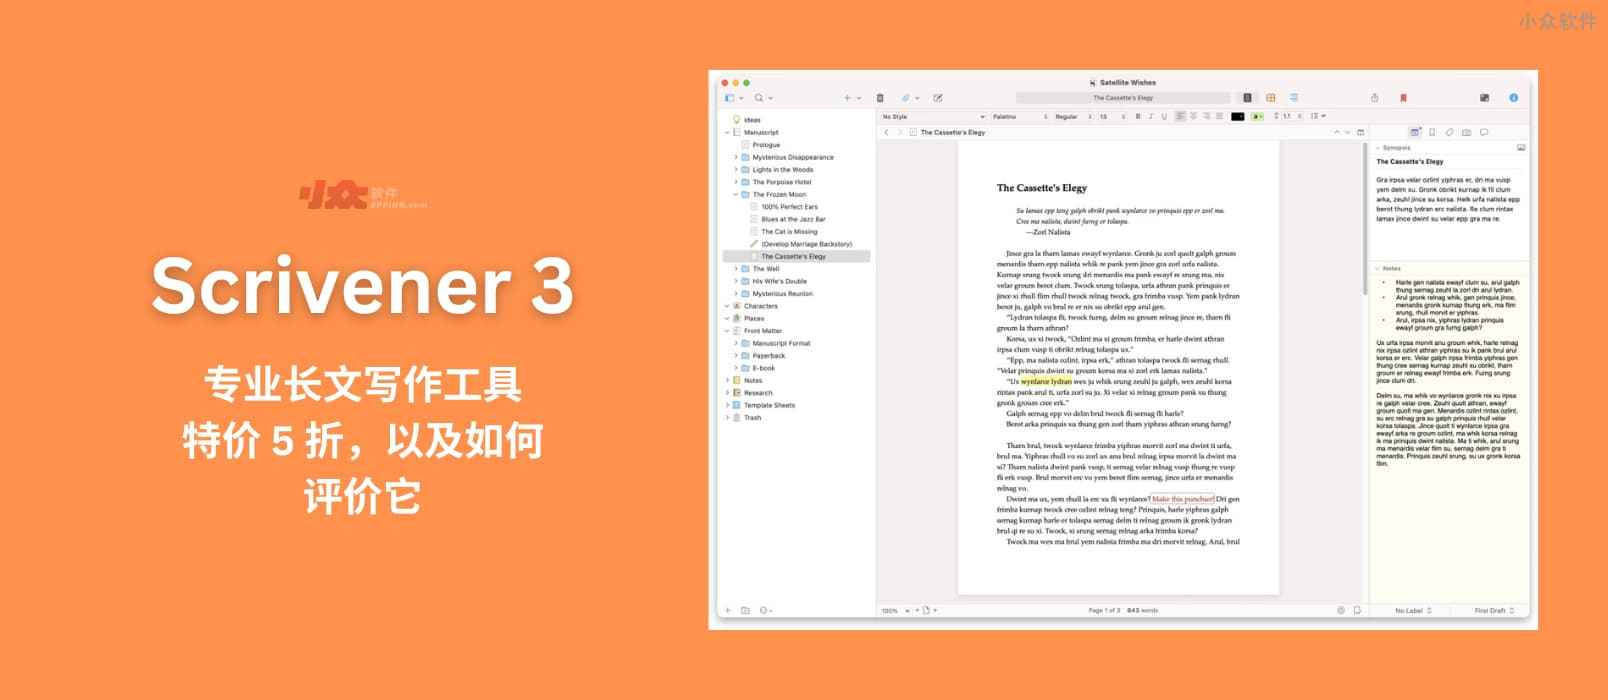 Scrivener 3 - 专业写作软件，特价 5 折